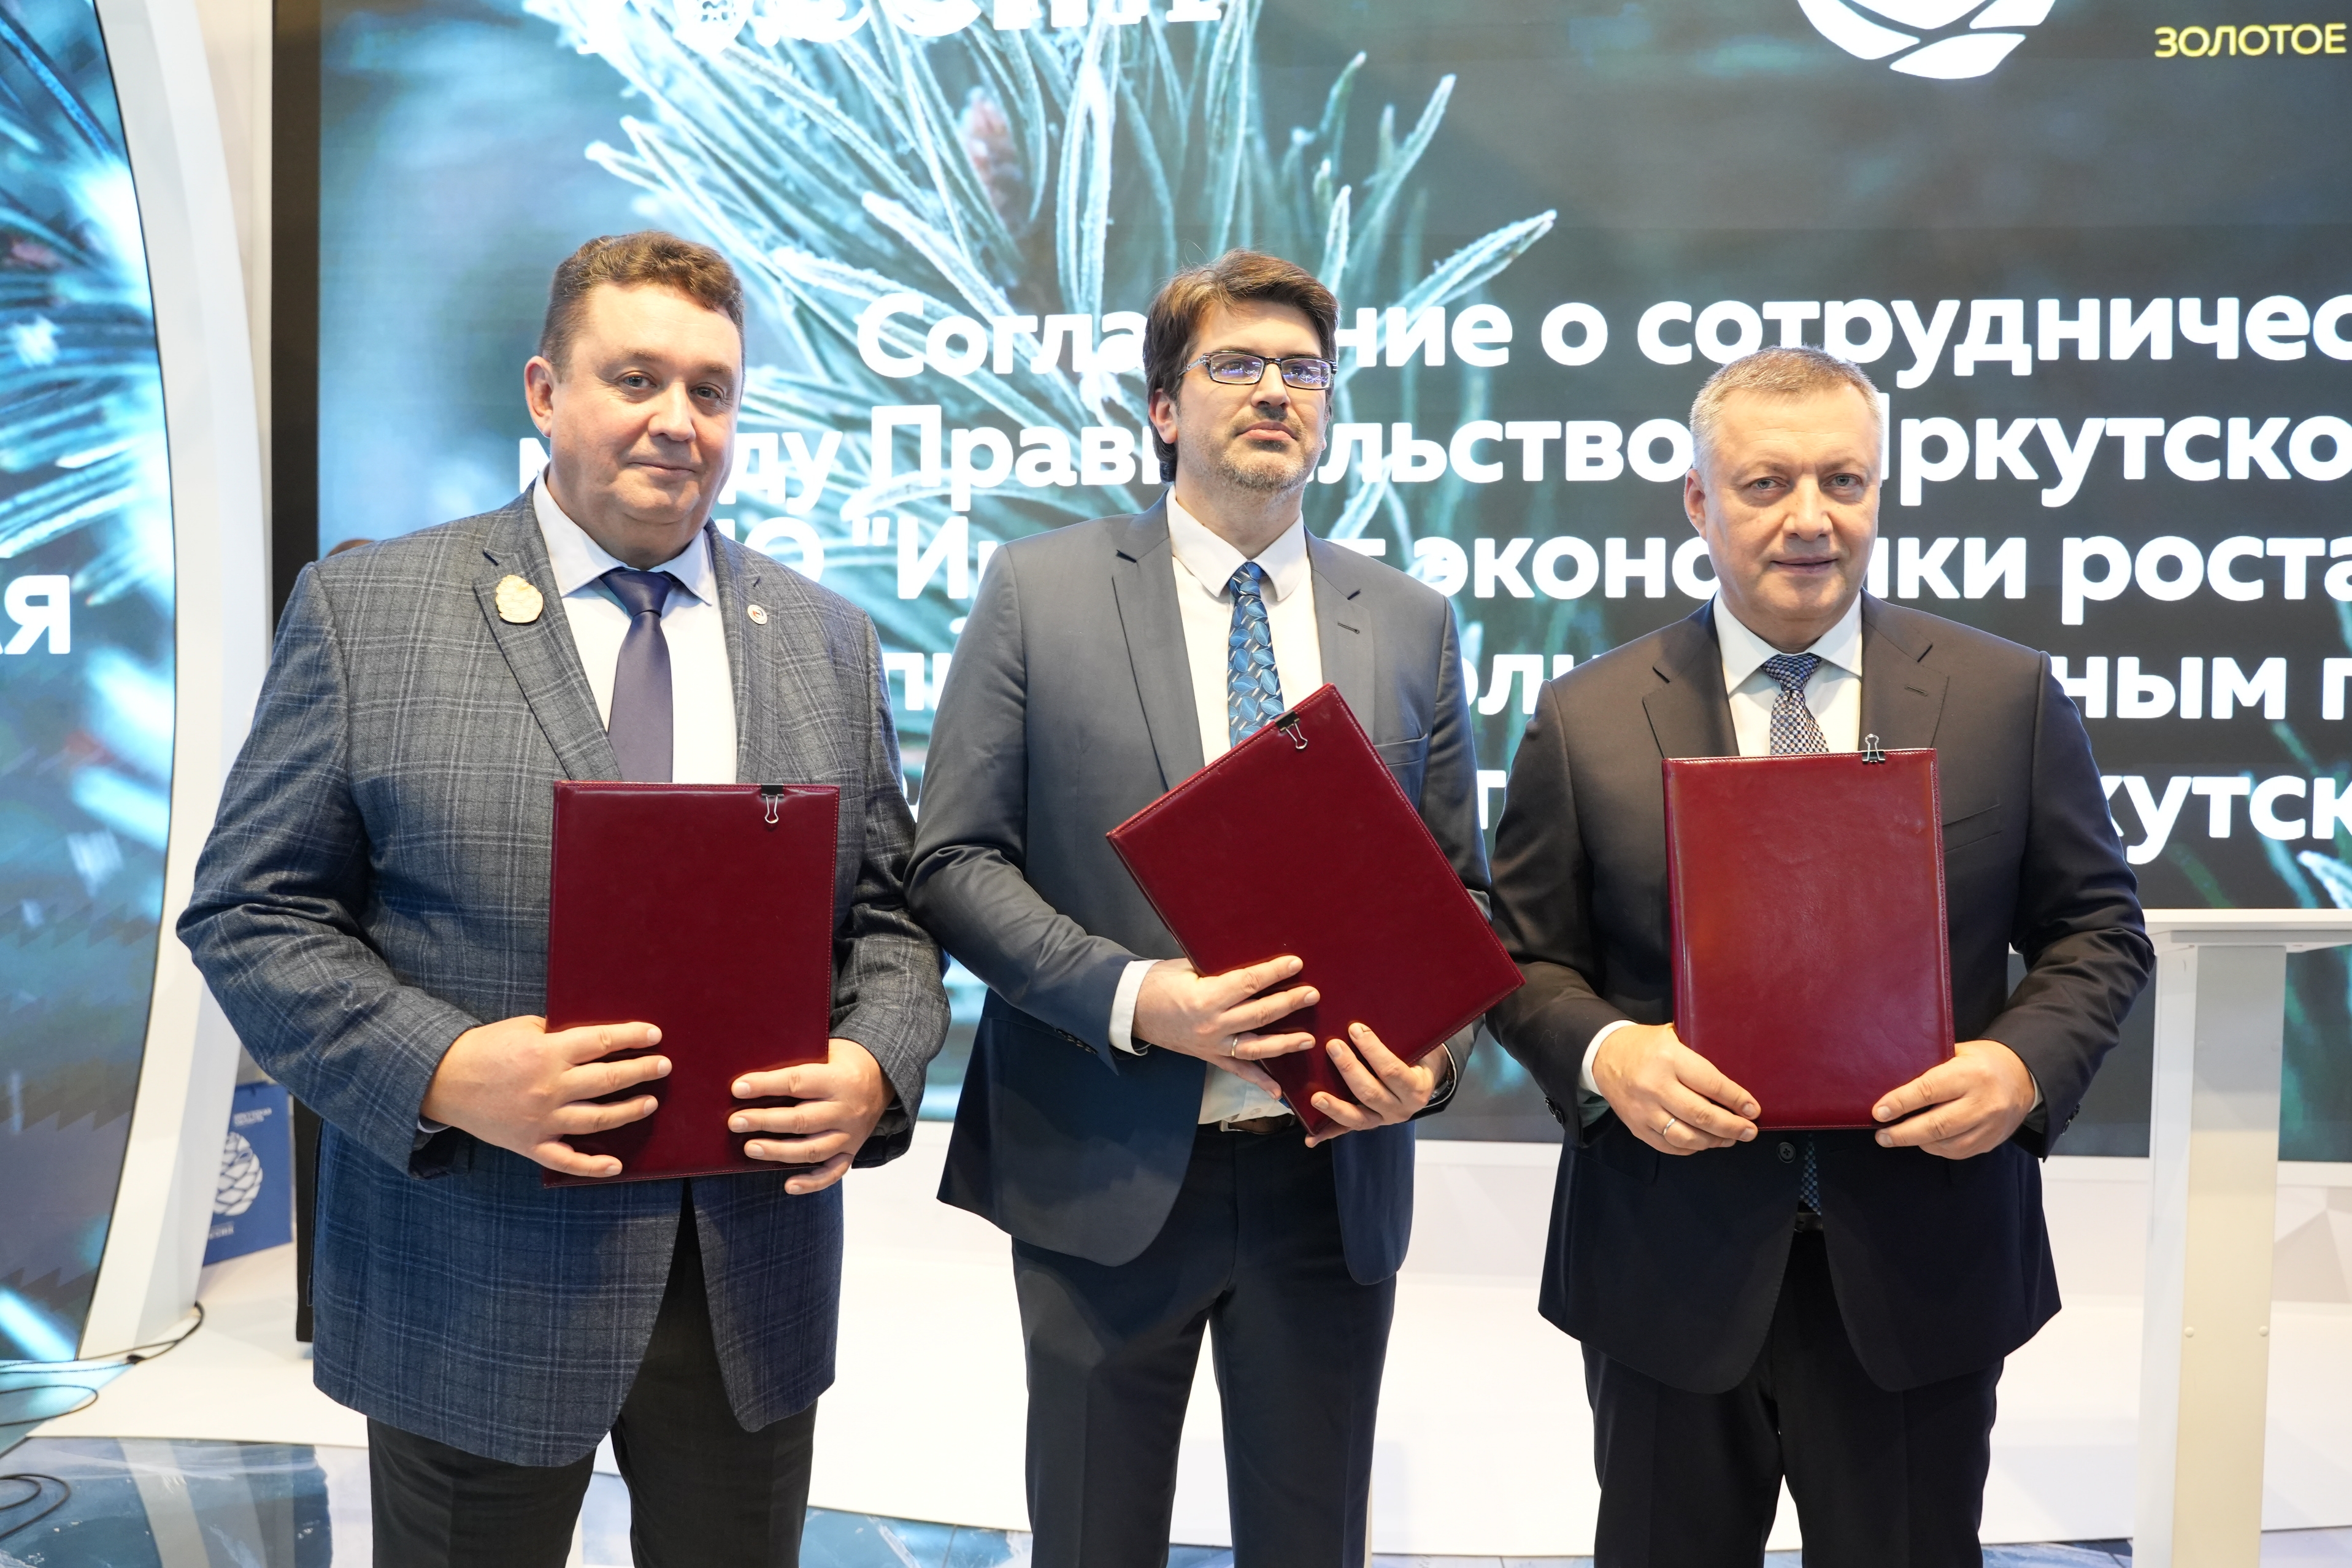 Институт Столыпина и Иркутская область договорились о сотрудничестве для поддержки предпринимательства в регионе